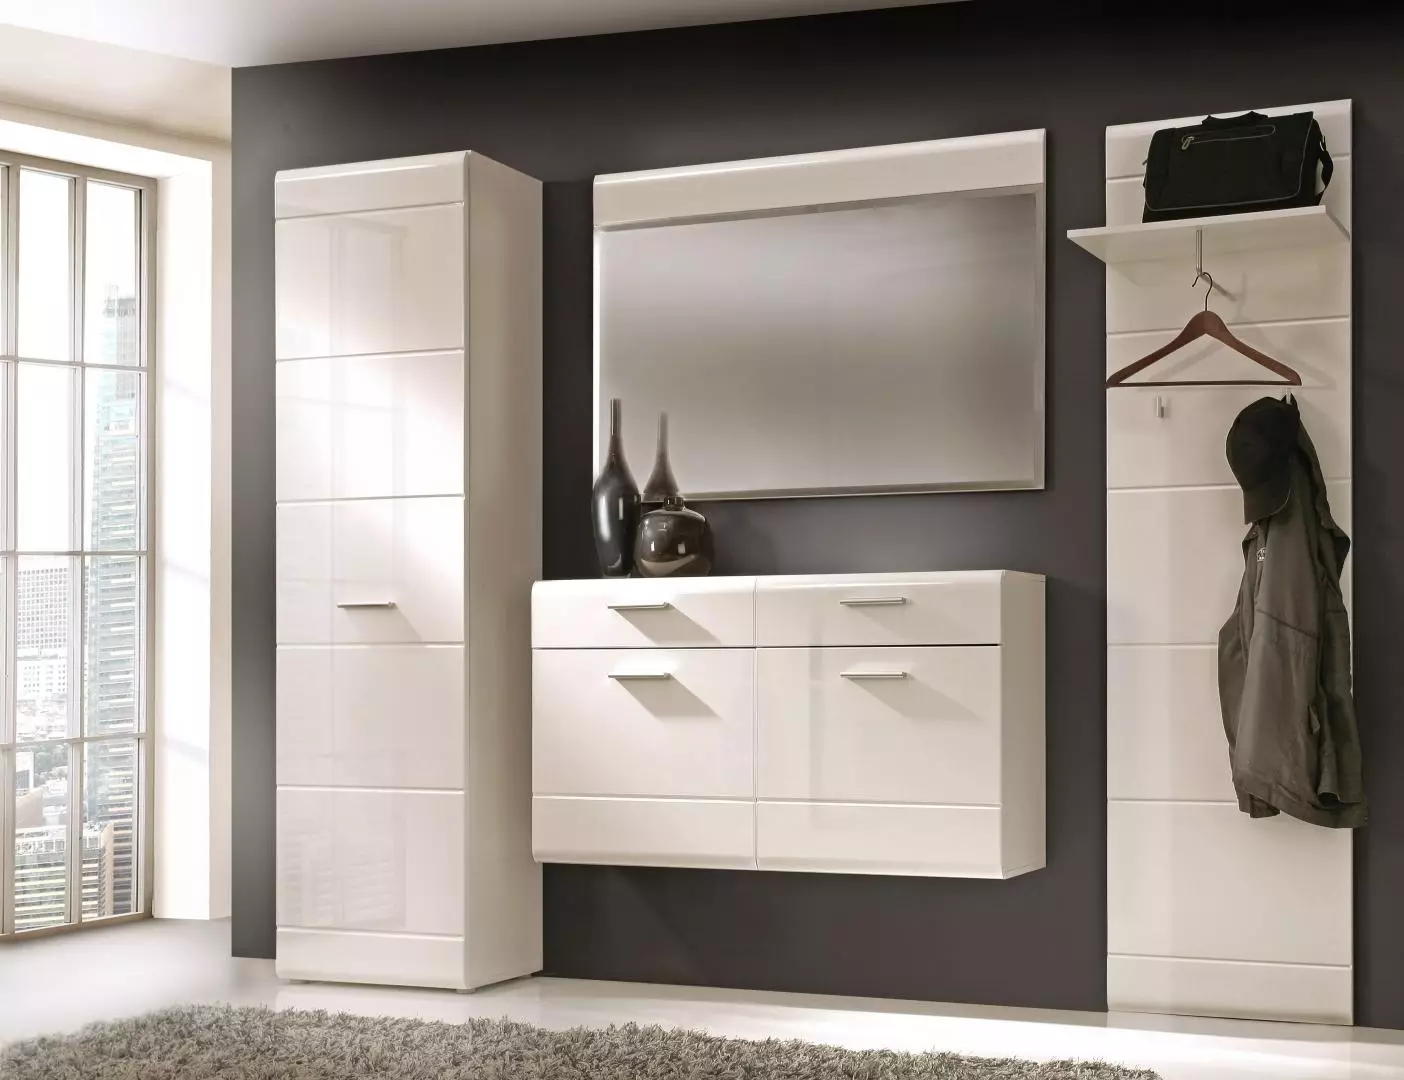 Salas brillantes: salas modulares brancas nun corredor con fachadas brillantes, mobles negros e outros modelos 9134_6